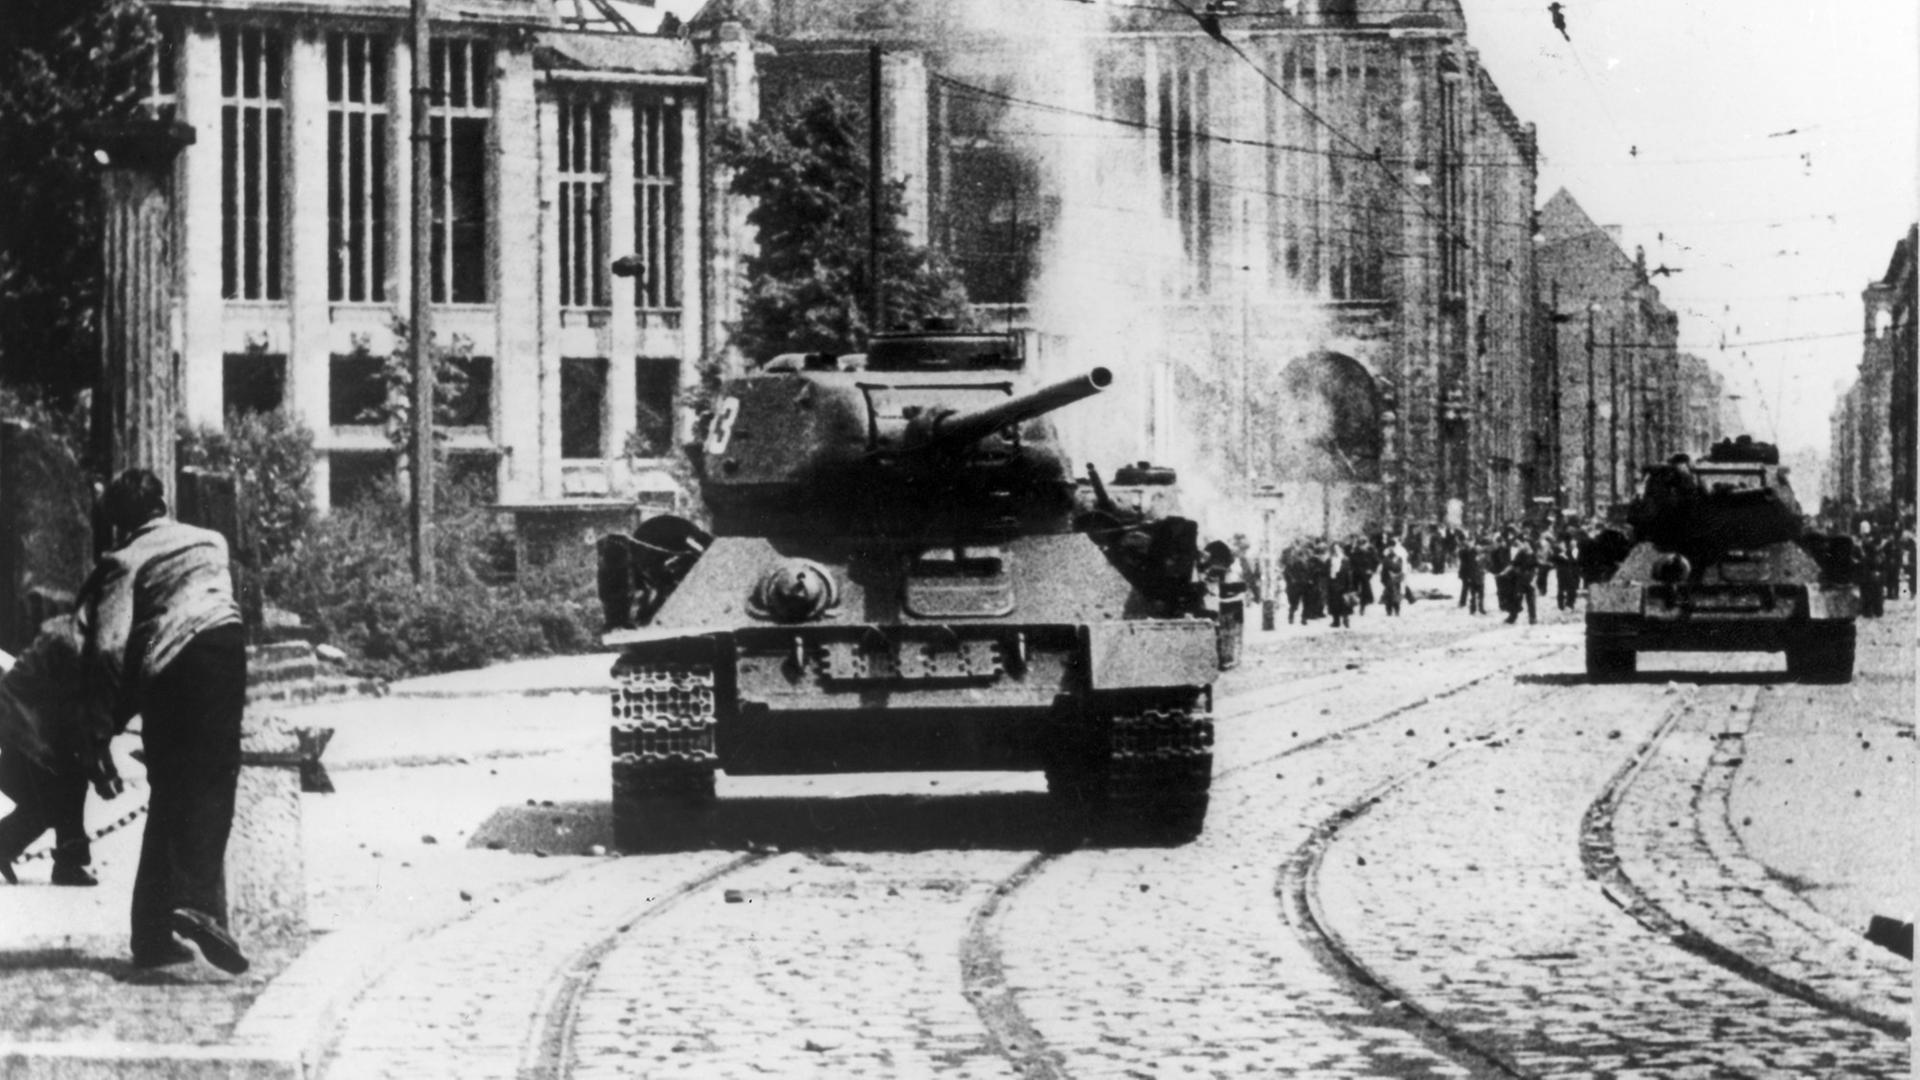 Berliner bewerfen einen sowjetischen Panzer in der Leipziger Straße nahes des Potsdamer Platzes in Berlin mit Steinen. Nach Streiks in Ost-Berlin kam es am 17.06.1953 zum Volksaufstand, der von sowjetischen Truppen niedergeschlagen wurde.